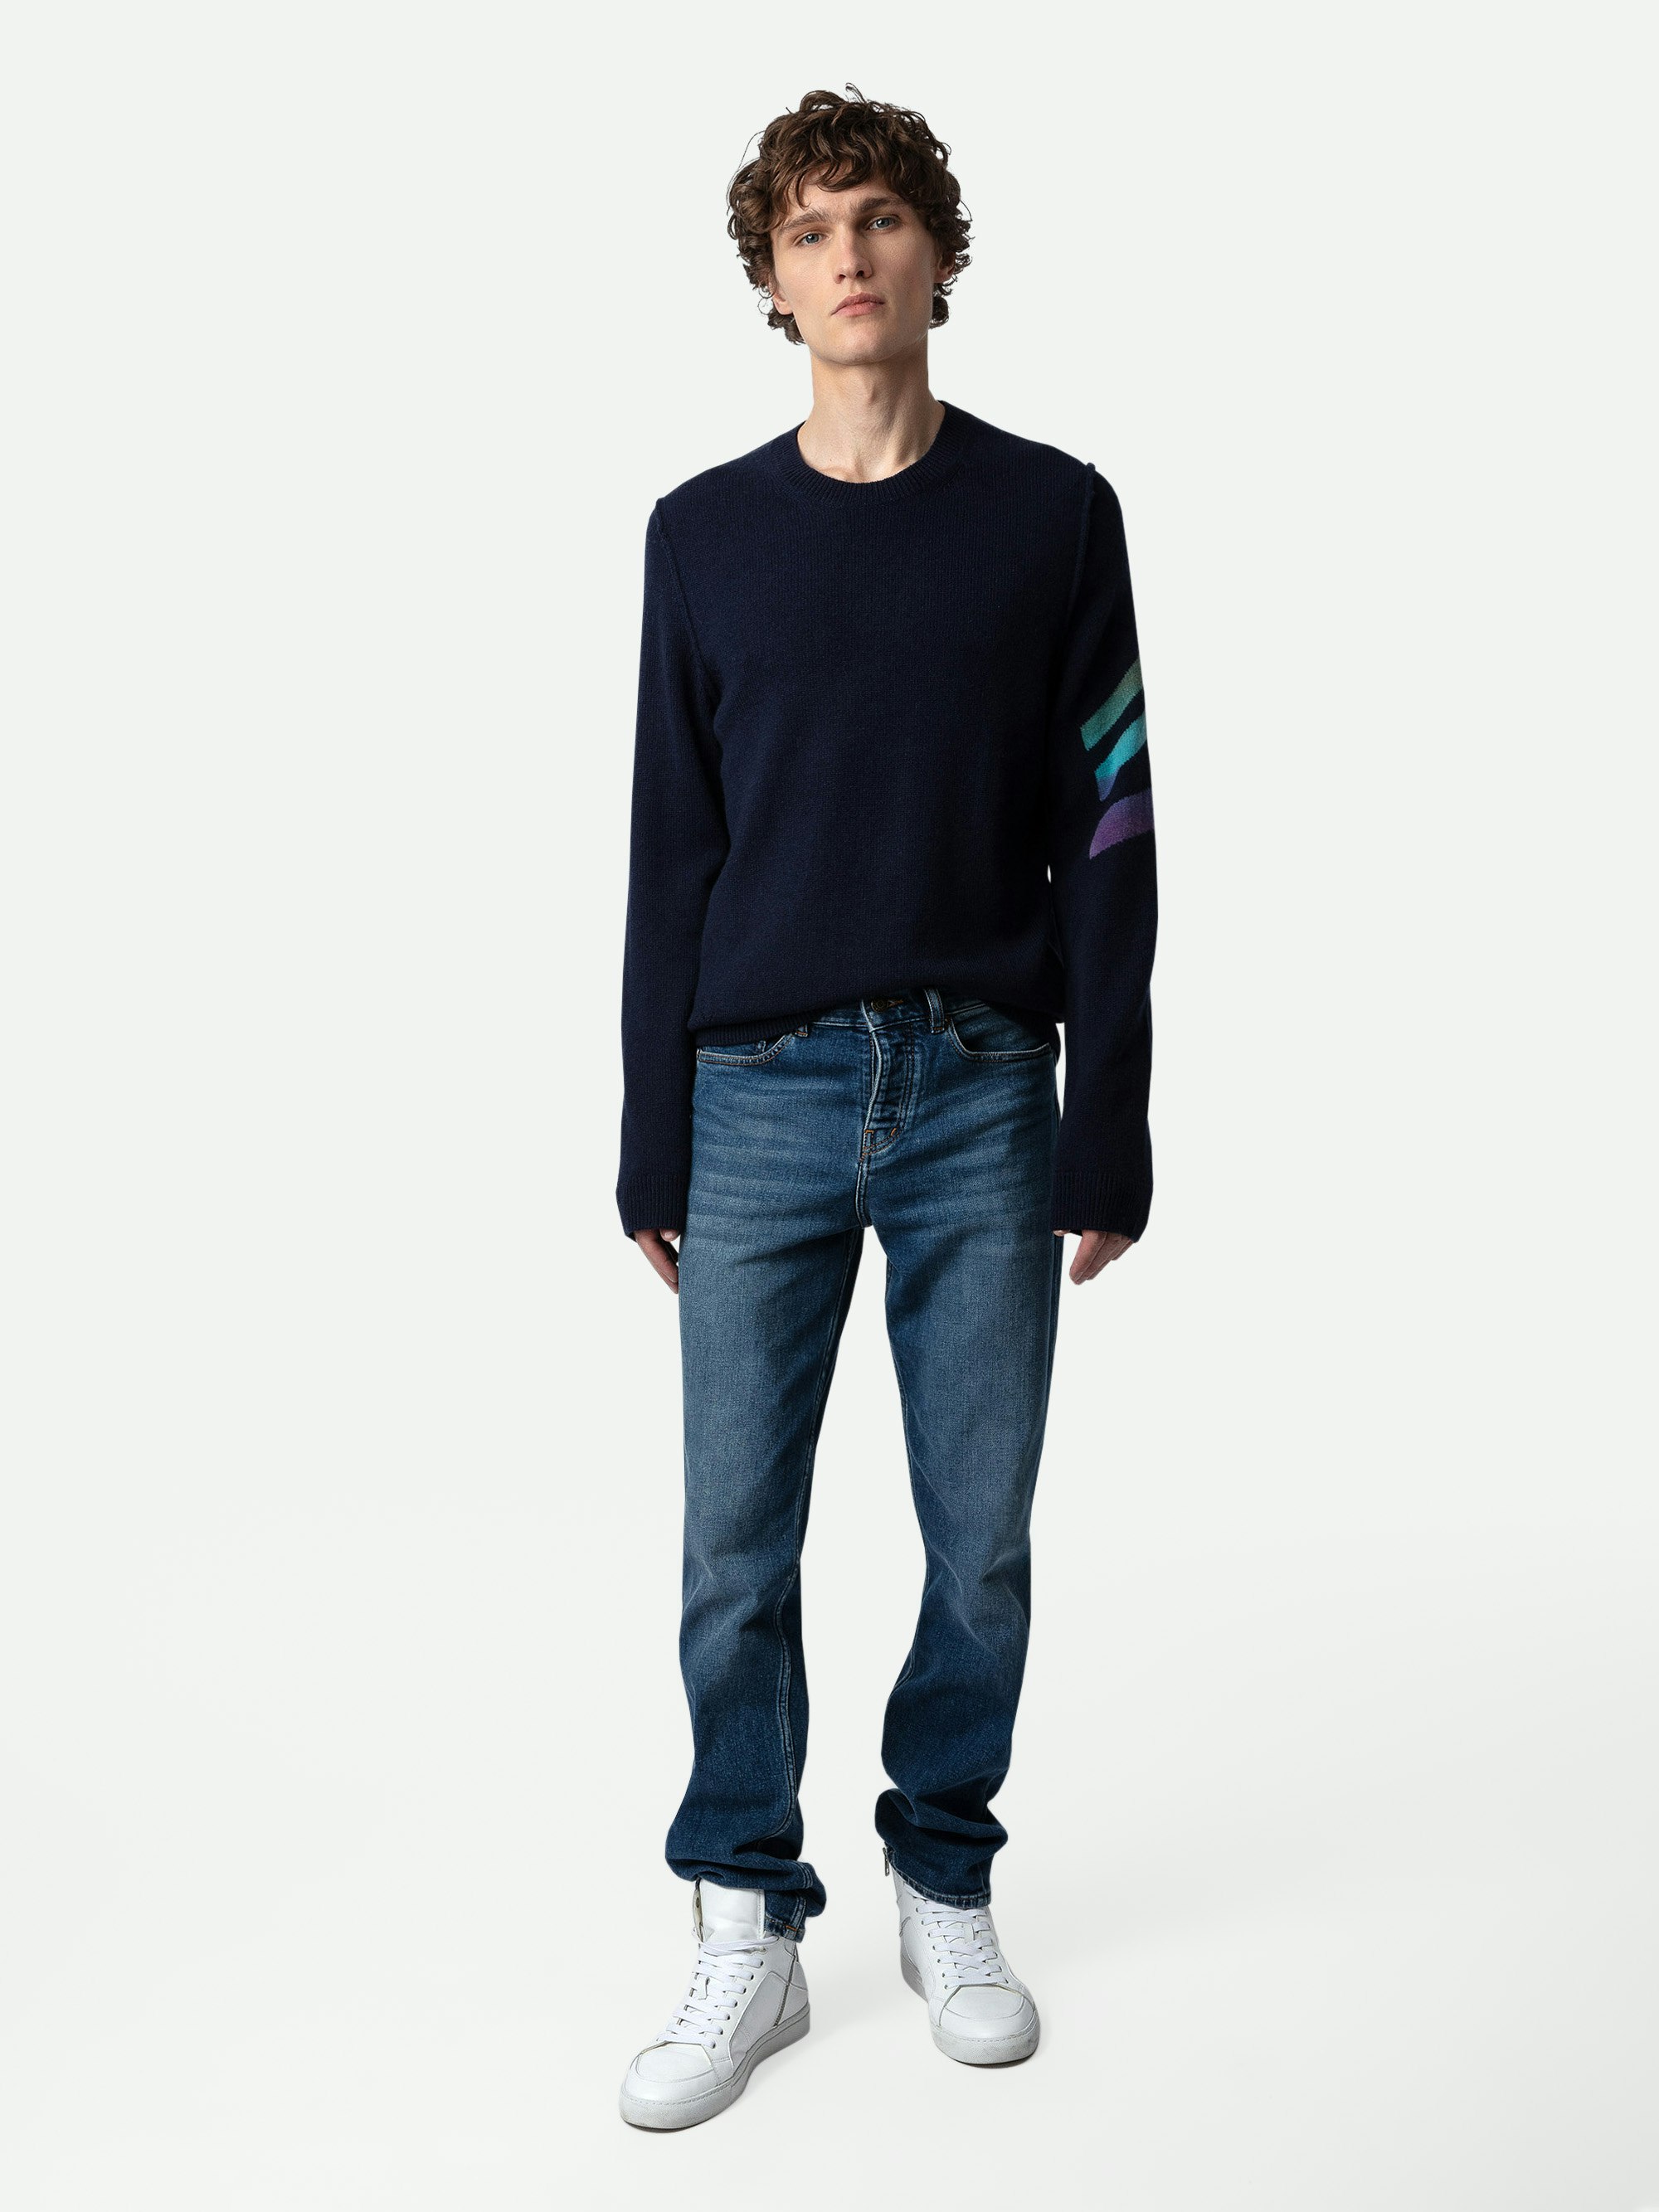 Kennedy Cashmere Jumper sweater blue men | Zadig&Voltaire